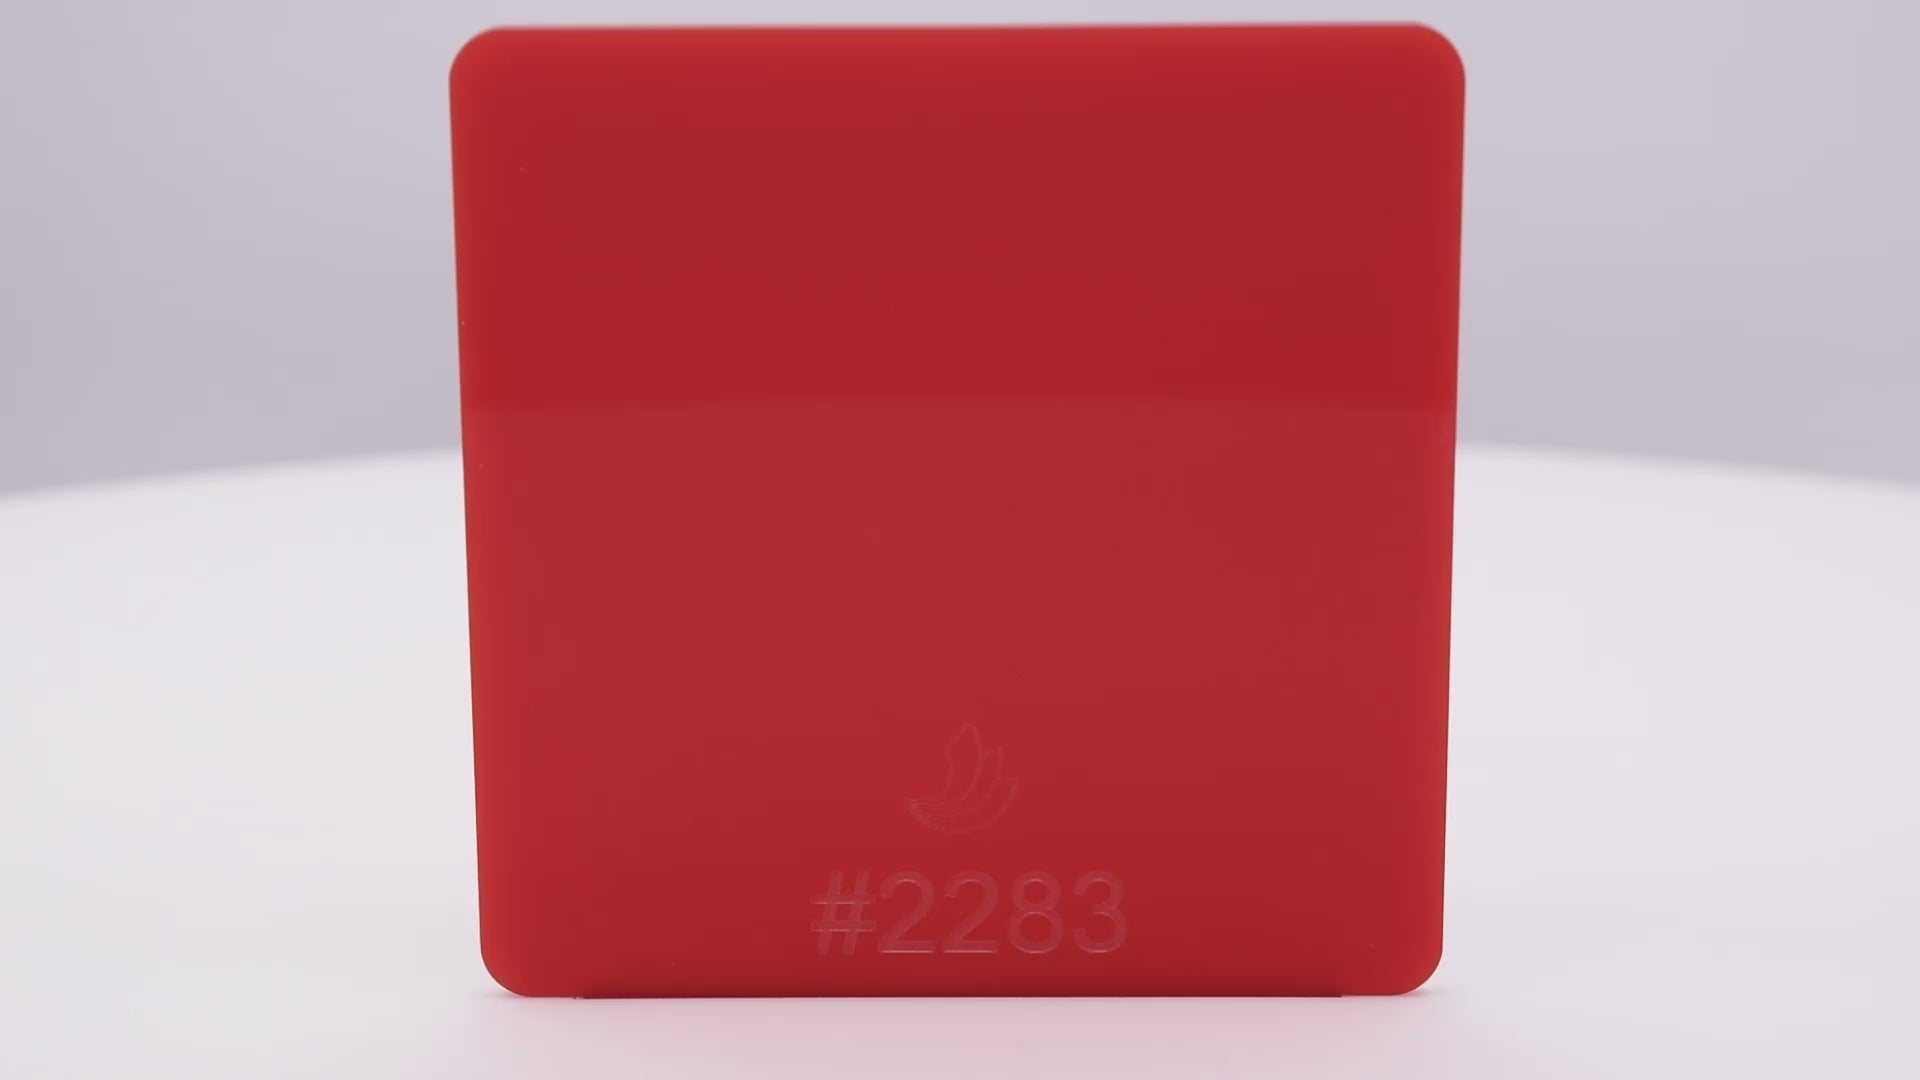 Hoja acrílica translúcida #2283 de 1/8" de color rojo claro